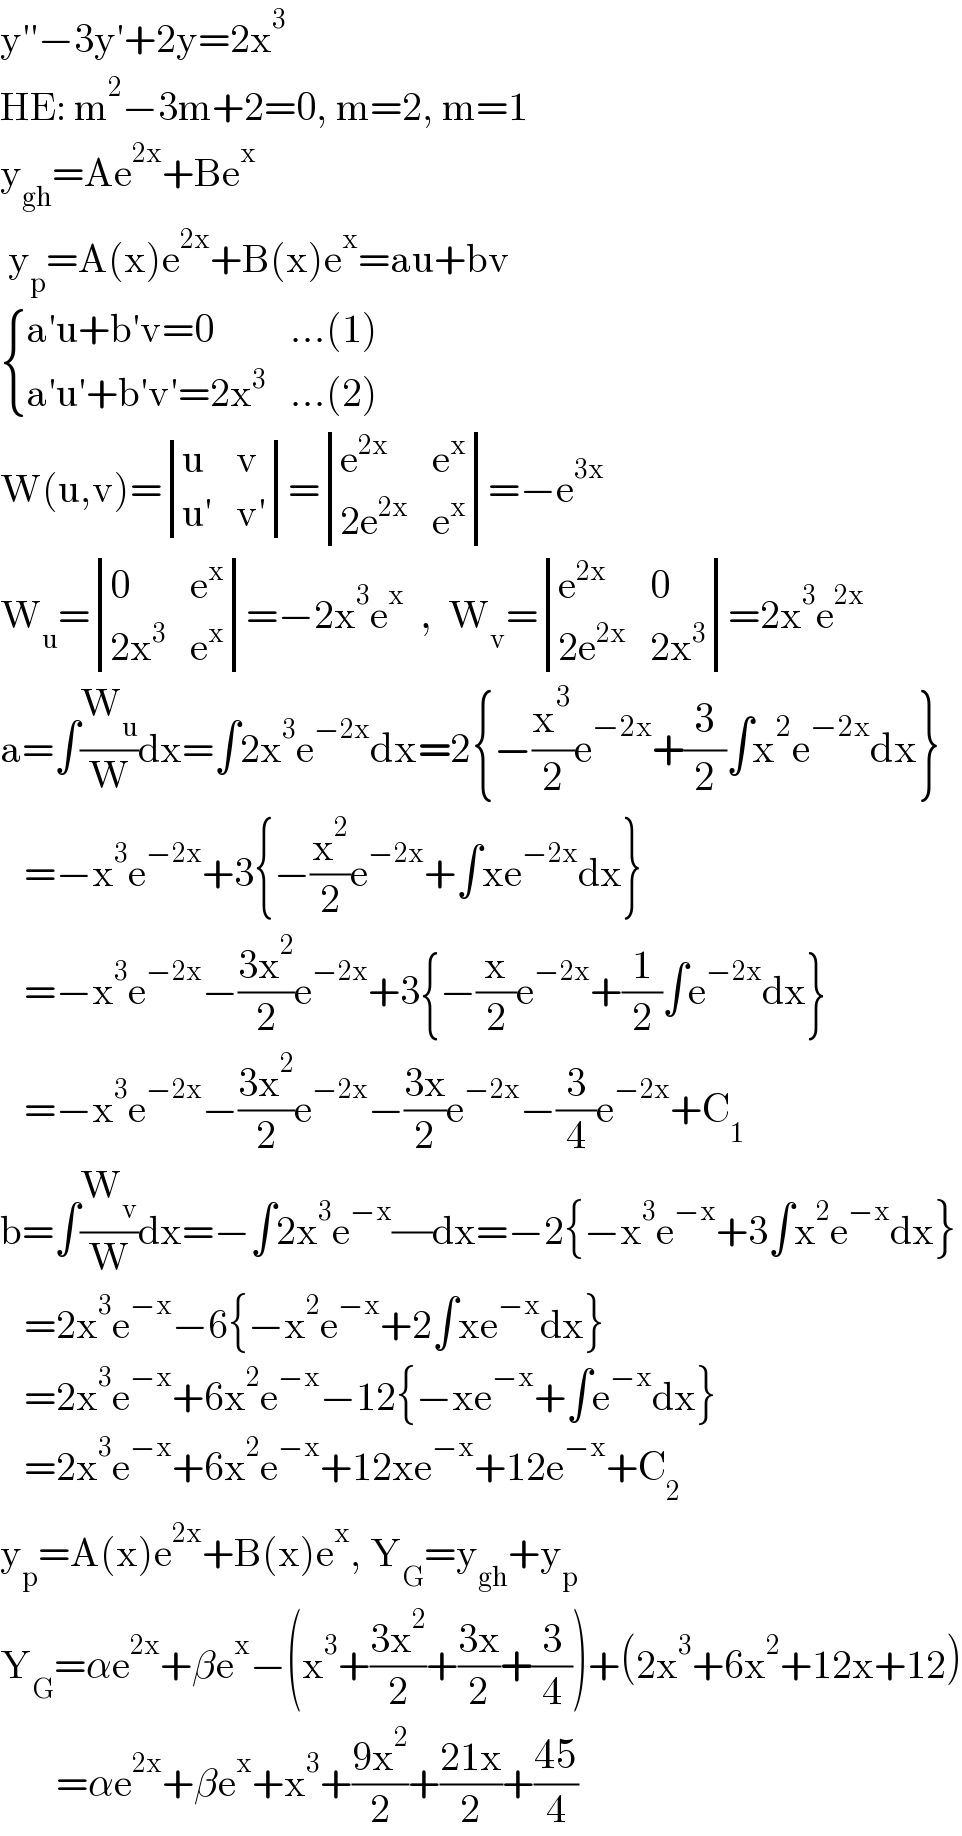 y′′−3y′+2y=2x^3   HE: m^2 −3m+2=0, m=2, m=1  y_(gh) =Ae^(2x) +Be^x    y_p =A(x)e^(2x) +B(x)e^x =au+bv   { ((a′u+b′v=0),(...(1))),((a′u′+b′v′=2x^3 ),(...(2))) :}  W(u,v)= determinant ((u,v),((u′),(v′)))= determinant ((e^(2x) ,e^x ),((2e^(2x) ),e^x ))=−e^(3x)   W_u = determinant ((0,e^x ),((2x^3 ),e^x ))=−2x^3 e^x   ,  W_v = determinant ((e^(2x) ,0),((2e^(2x) ),(2x^3 )))=2x^3 e^(2x)   a=∫(W_u /W)dx=∫2x^3 e^(−2x) dx=2{−(x^3 /2)e^(−2x) +(3/2)∫x^2 e^(−2x) dx}     =−x^3 e^(−2x) +3{−(x^2 /2)e^(−2x) +∫xe^(−2x) dx}     =−x^3 e^(−2x) −((3x^2 )/2)e^(−2x) +3{−(x/2)e^(−2x) +(1/2)∫e^(−2x) dx}     =−x^3 e^(−2x) −((3x^2 )/2)e^(−2x) −((3x)/2)e^(−2x) −(3/4)e^(−2x) +C_1   b=∫(W_v /W)dx=−∫2x^3 e^(−x) (/)dx=−2{−x^3 e^(−x) +3∫x^2 e^(−x) dx}     =2x^3 e^(−x) −6{−x^2 e^(−x) +2∫xe^(−x) dx}     =2x^3 e^(−x) +6x^2 e^(−x) −12{−xe^(−x) +∫e^(−x) dx}     =2x^3 e^(−x) +6x^2 e^(−x) +12xe^(−x) +12e^(−x) +C_2   y_p =A(x)e^(2x) +B(x)e^x , Y_G =y_(gh) +y_p   Y_G =αe^(2x) +βe^x −(x^3 +((3x^2 )/2)+((3x)/2)+(3/4))+(2x^3 +6x^2 +12x+12)         =αe^(2x) +βe^x +x^3 +((9x^2 )/2)+((21x)/2)+((45)/4)  